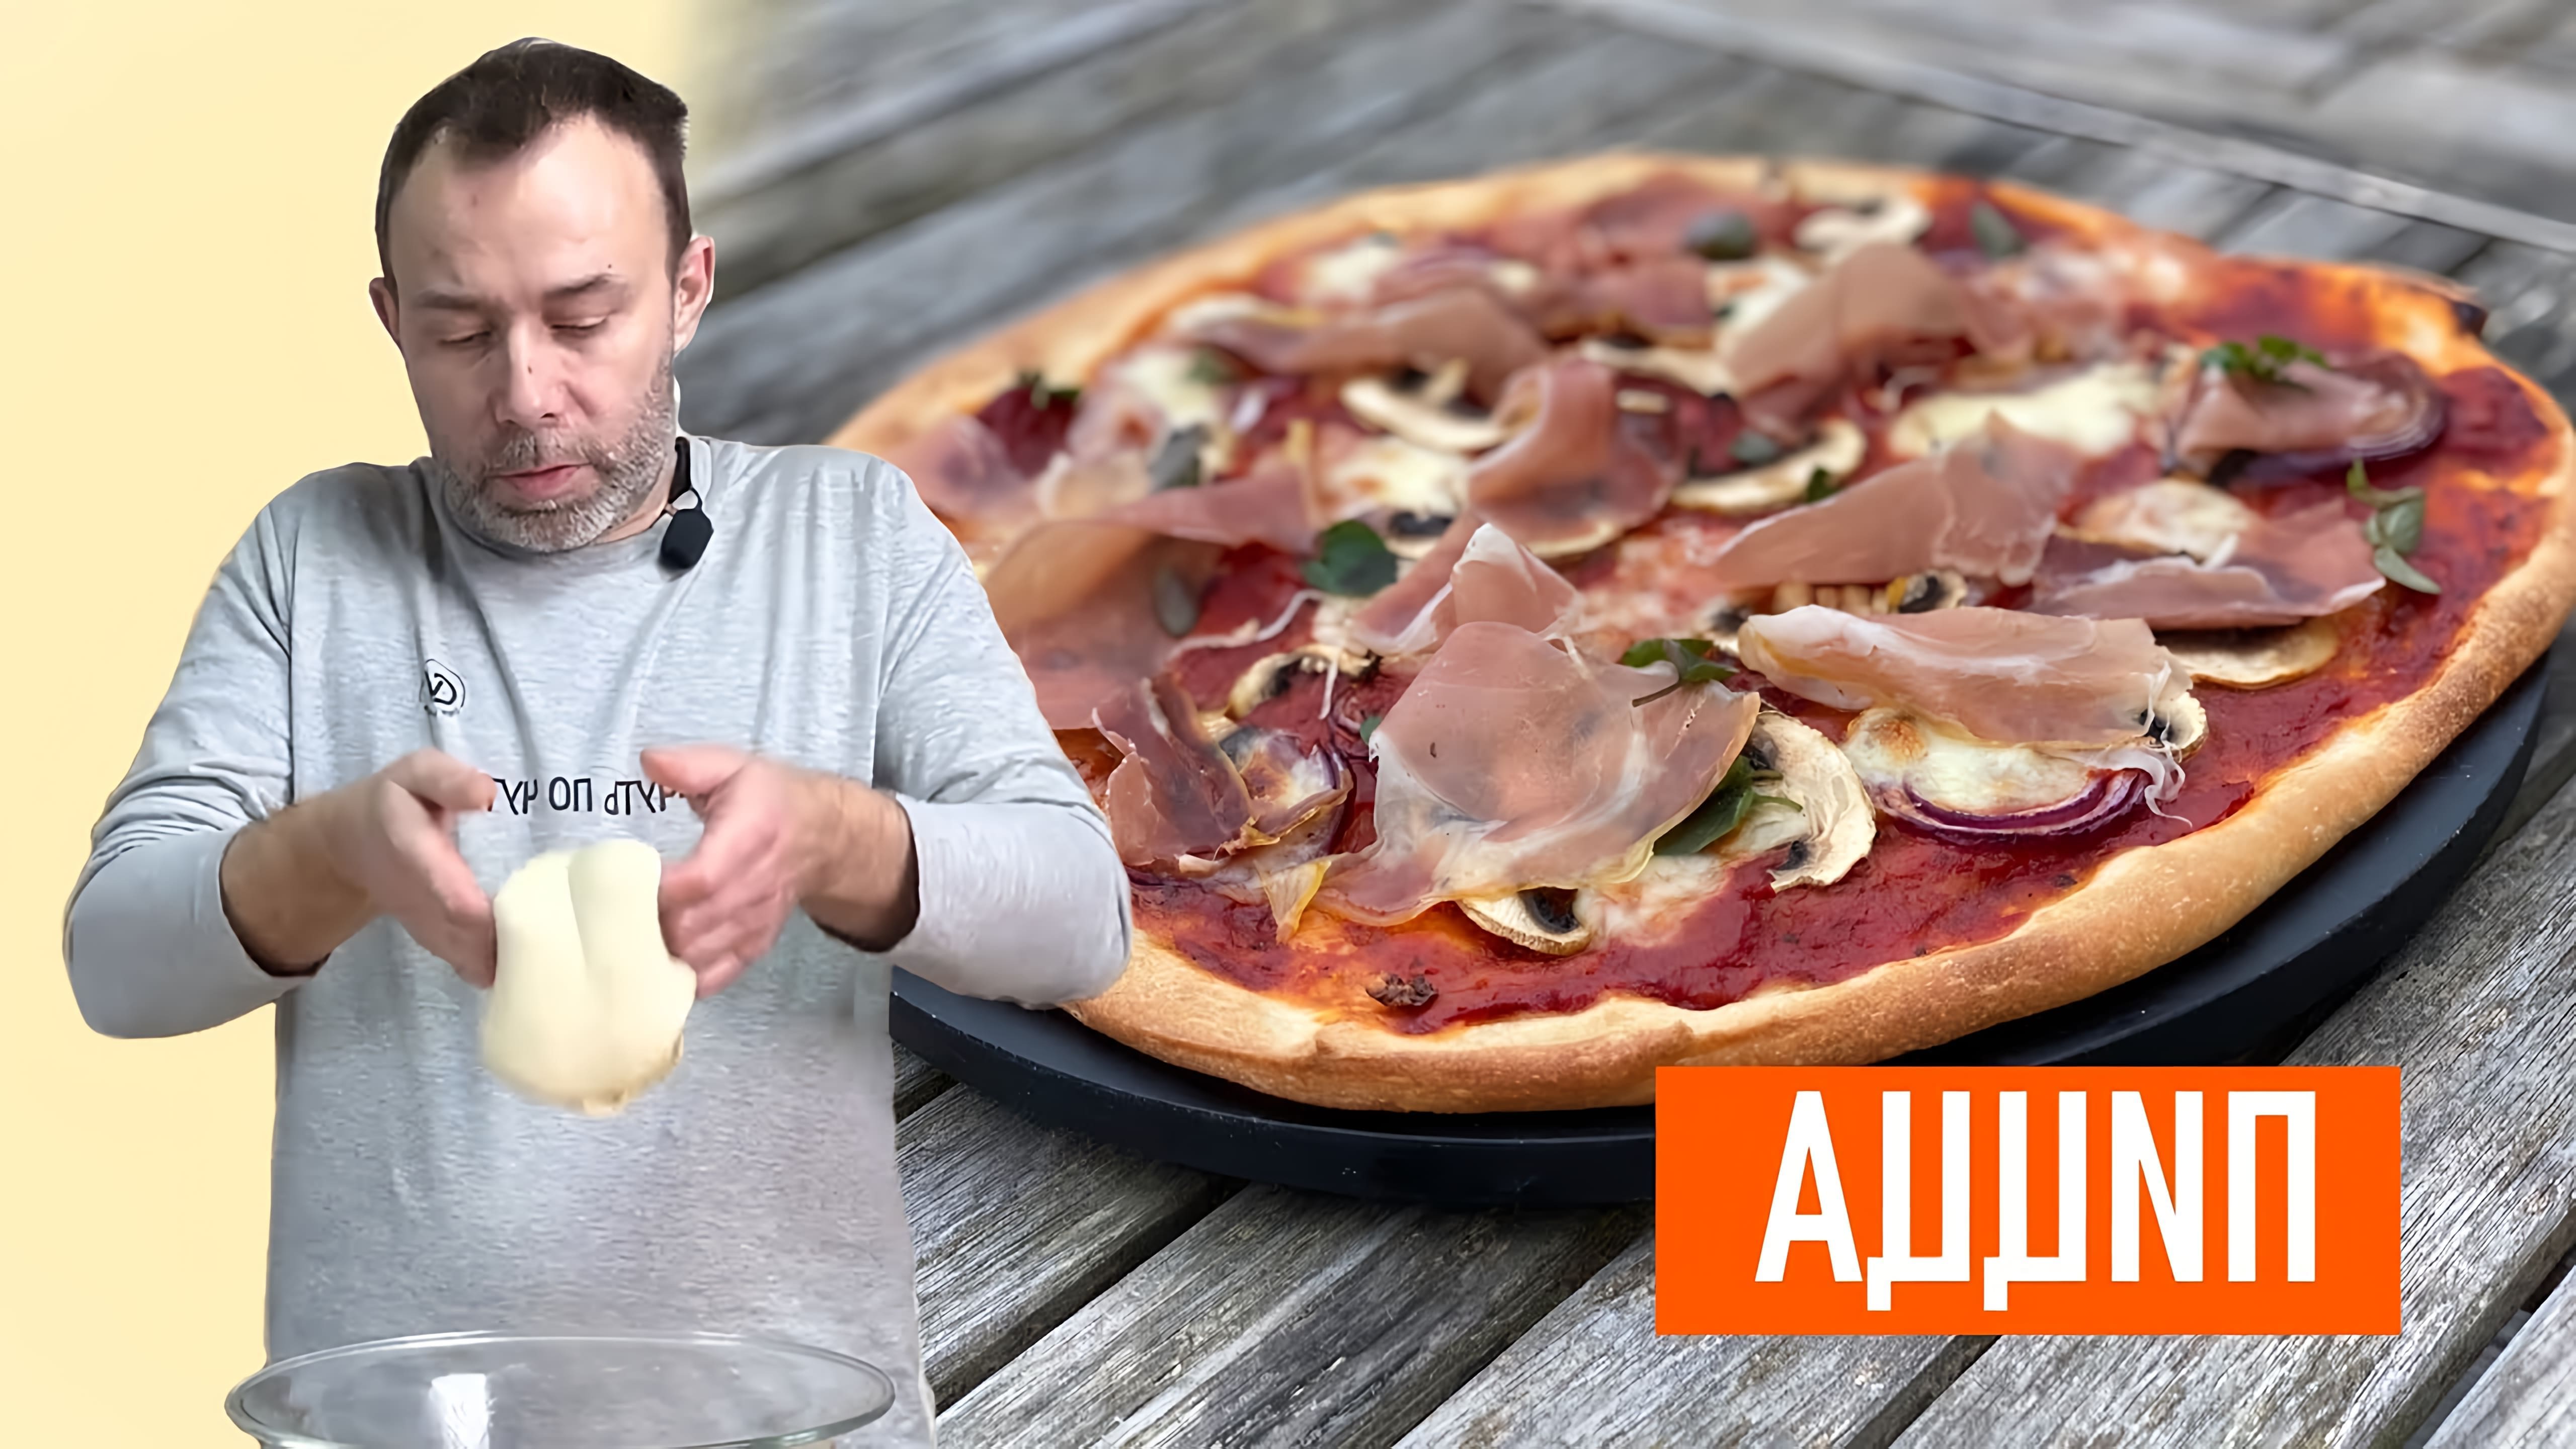 В этом видео демонстрируется процесс приготовления идеального теста для пиццы